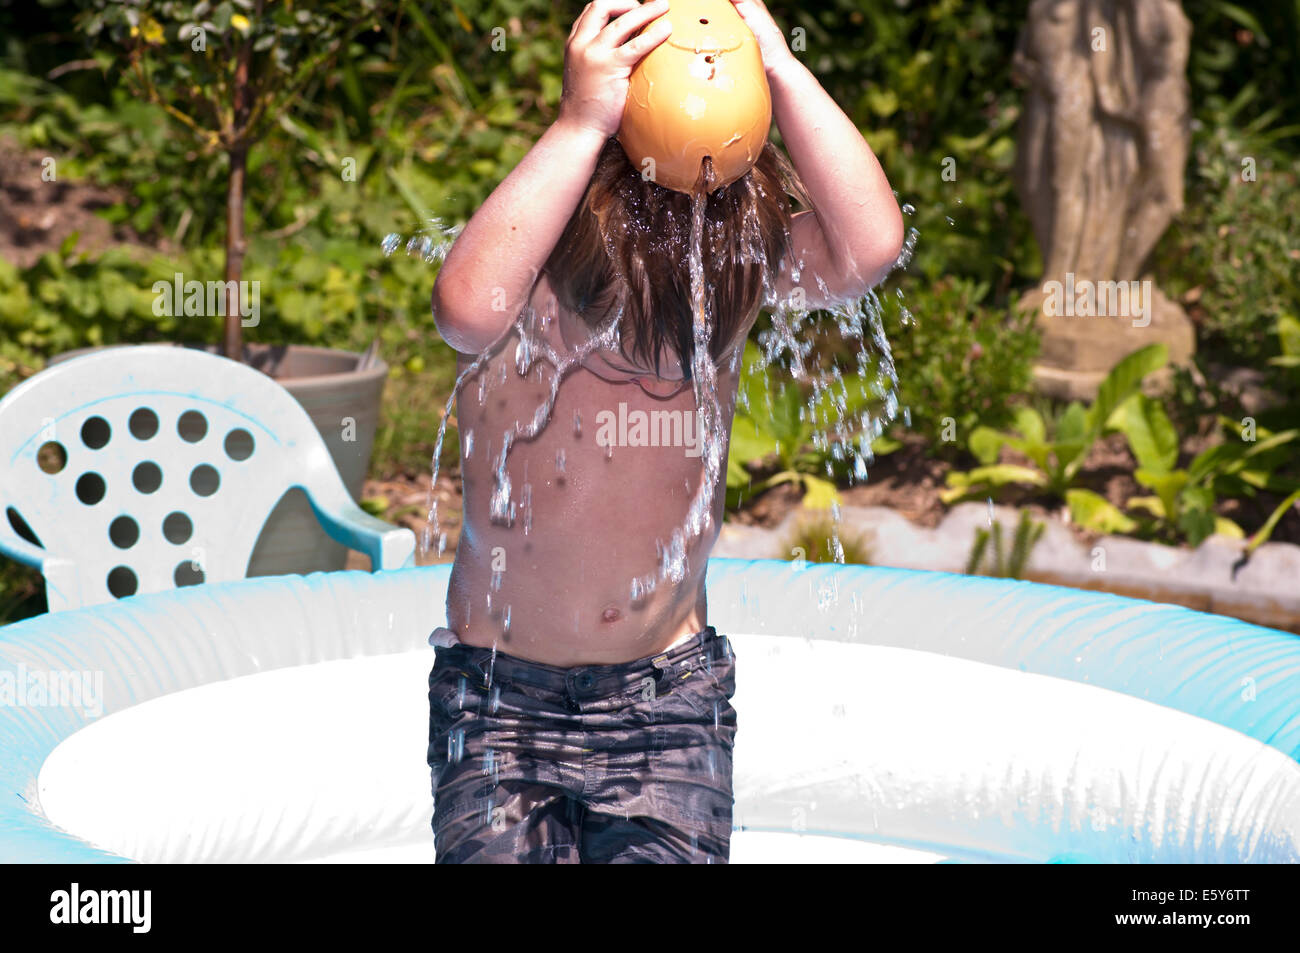 Jeune garçon verser de l'eau sur la tête pour se rafraîchir par une chaude journée Banque D'Images